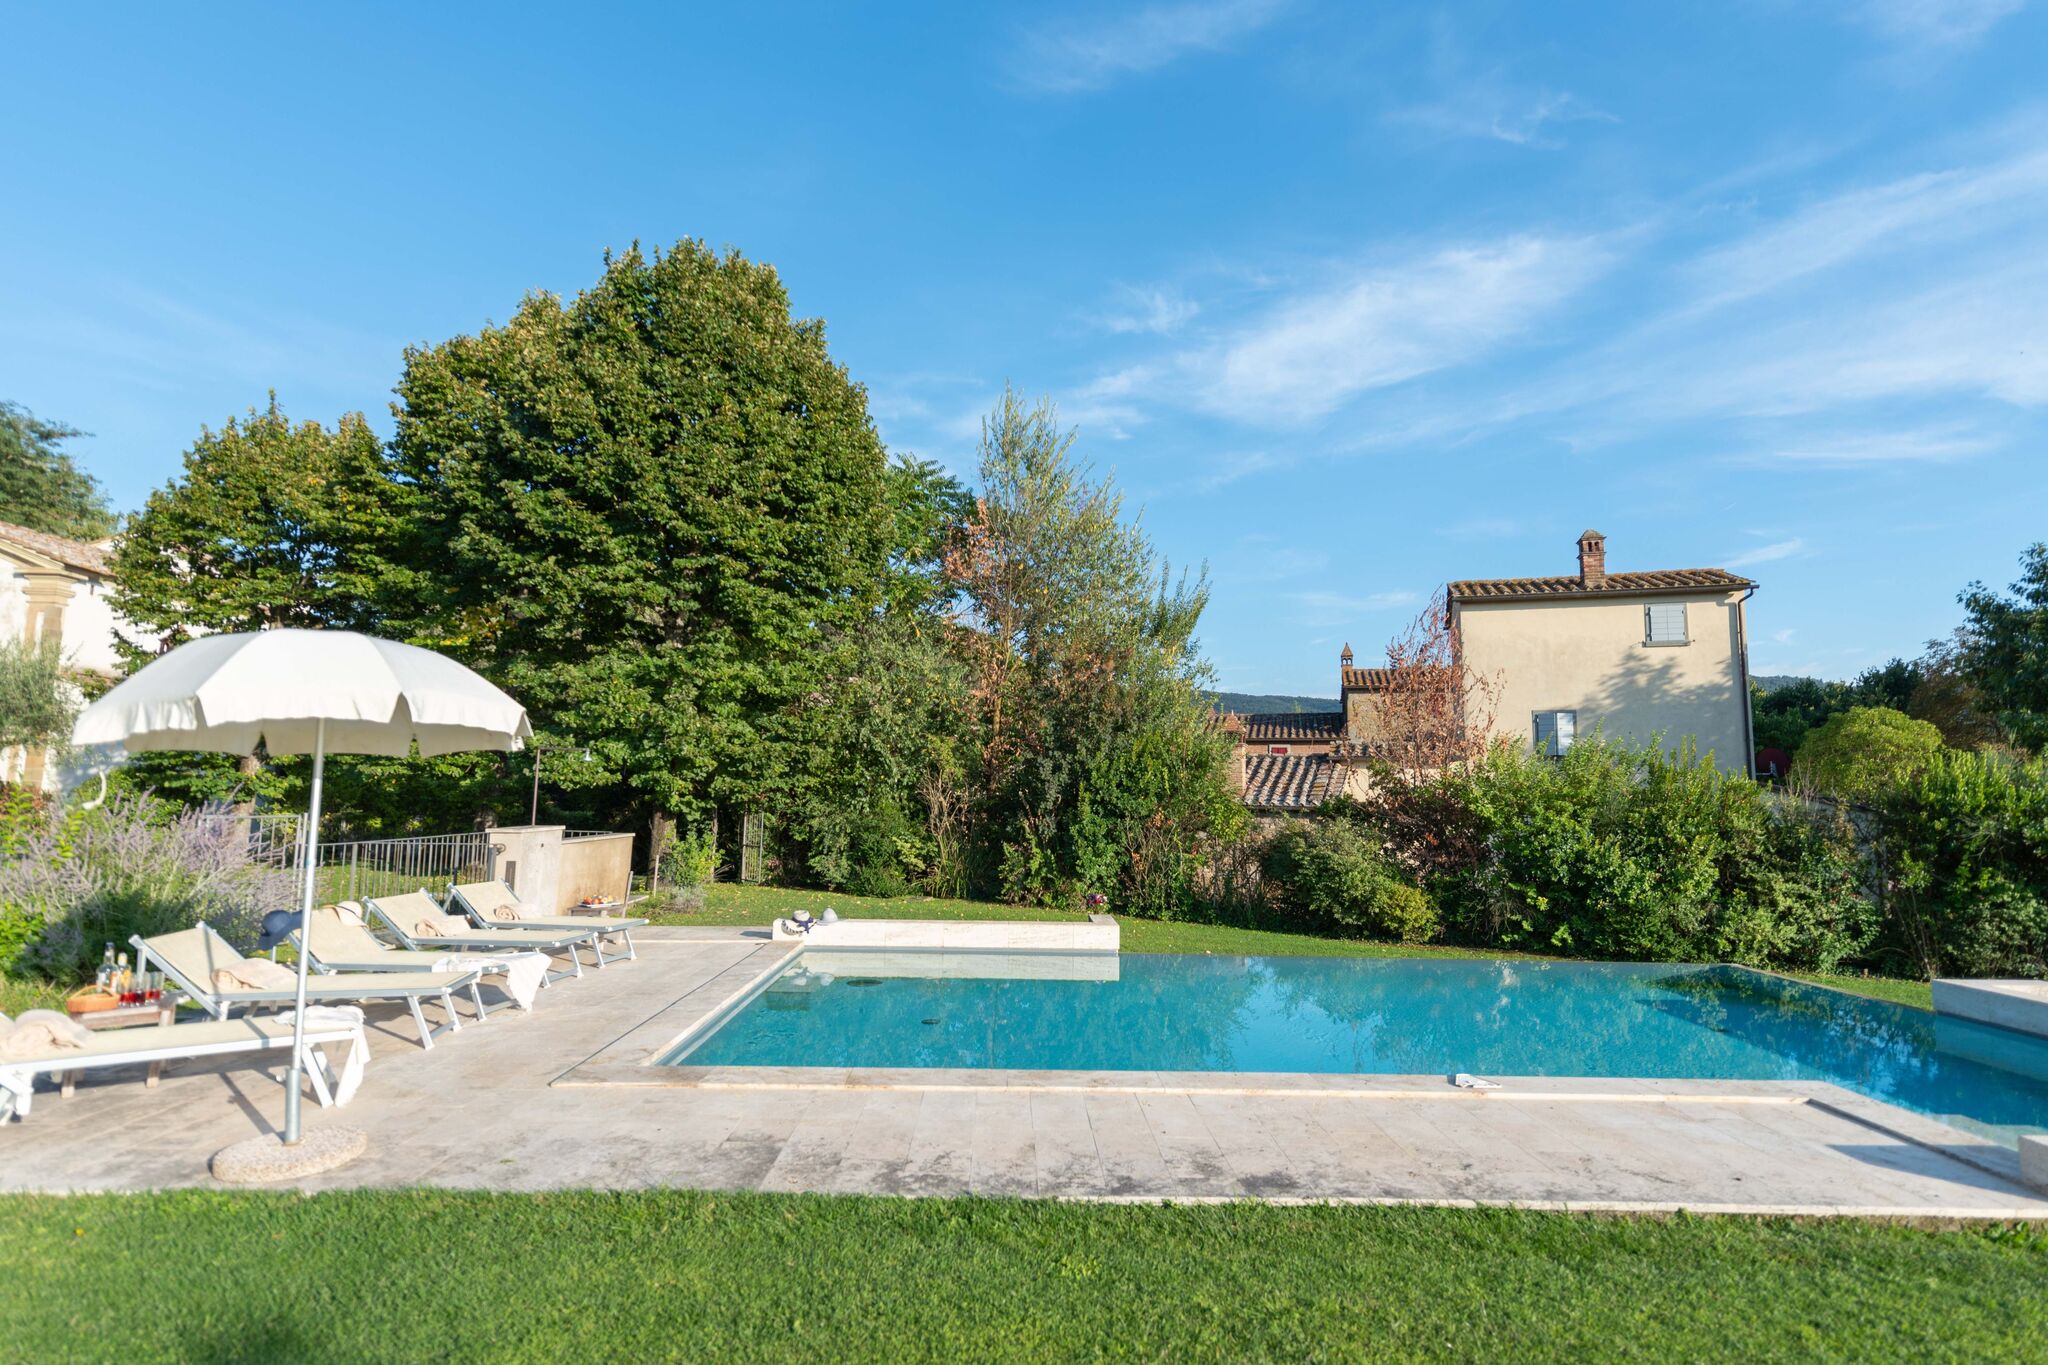 Beautiful Villa near Cortona with Private Swimming Pool